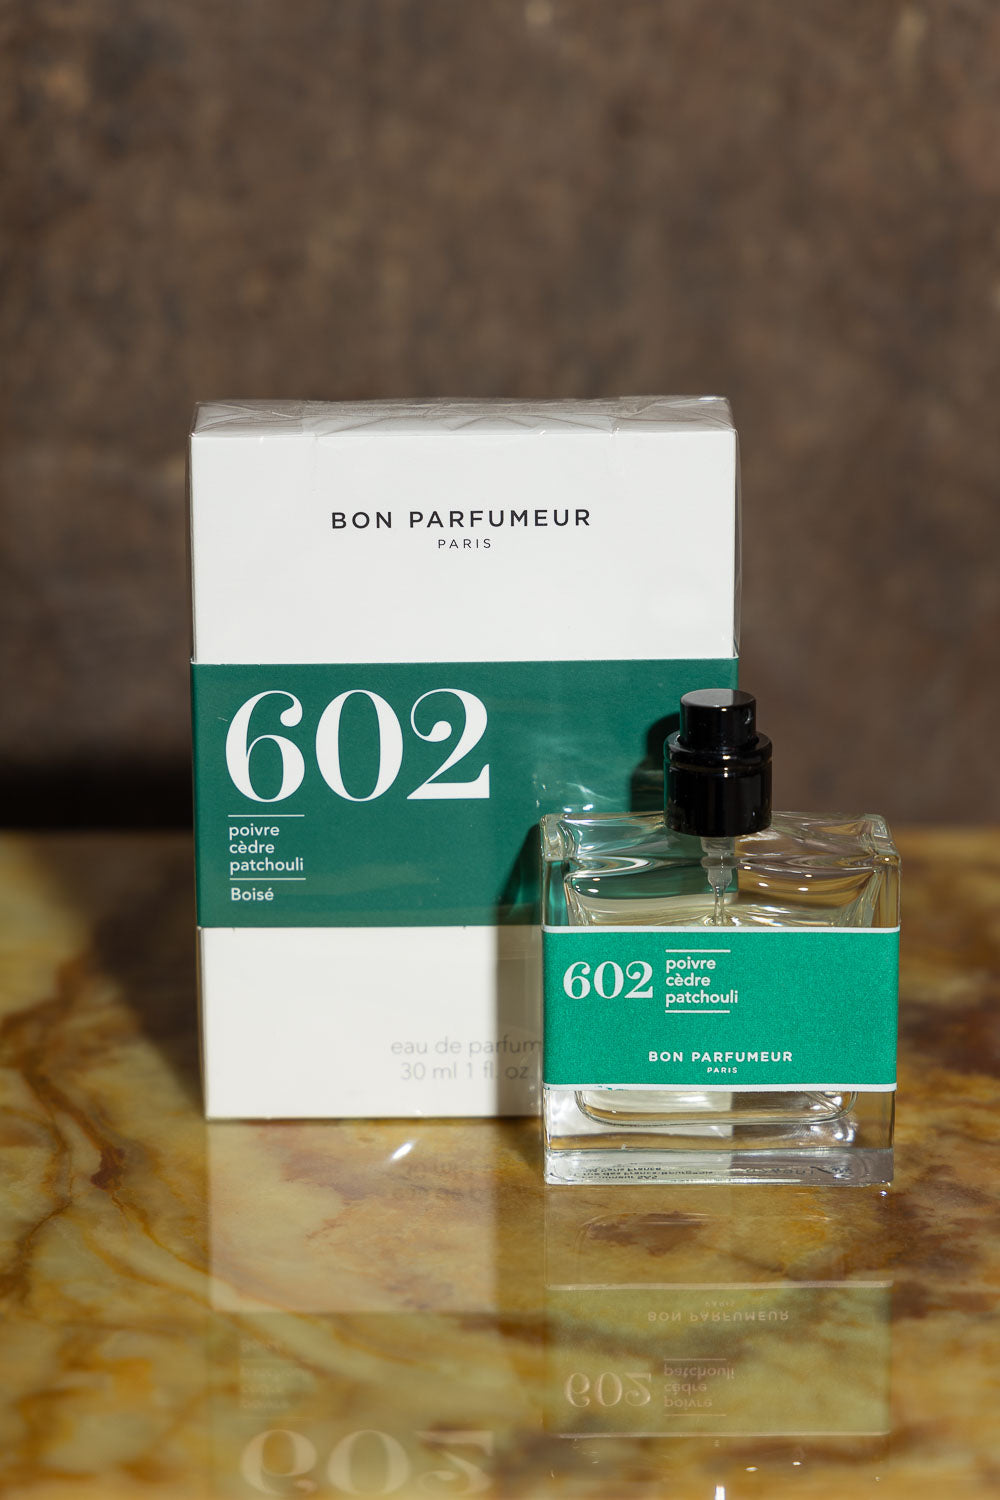 Bon Perfumeur 602